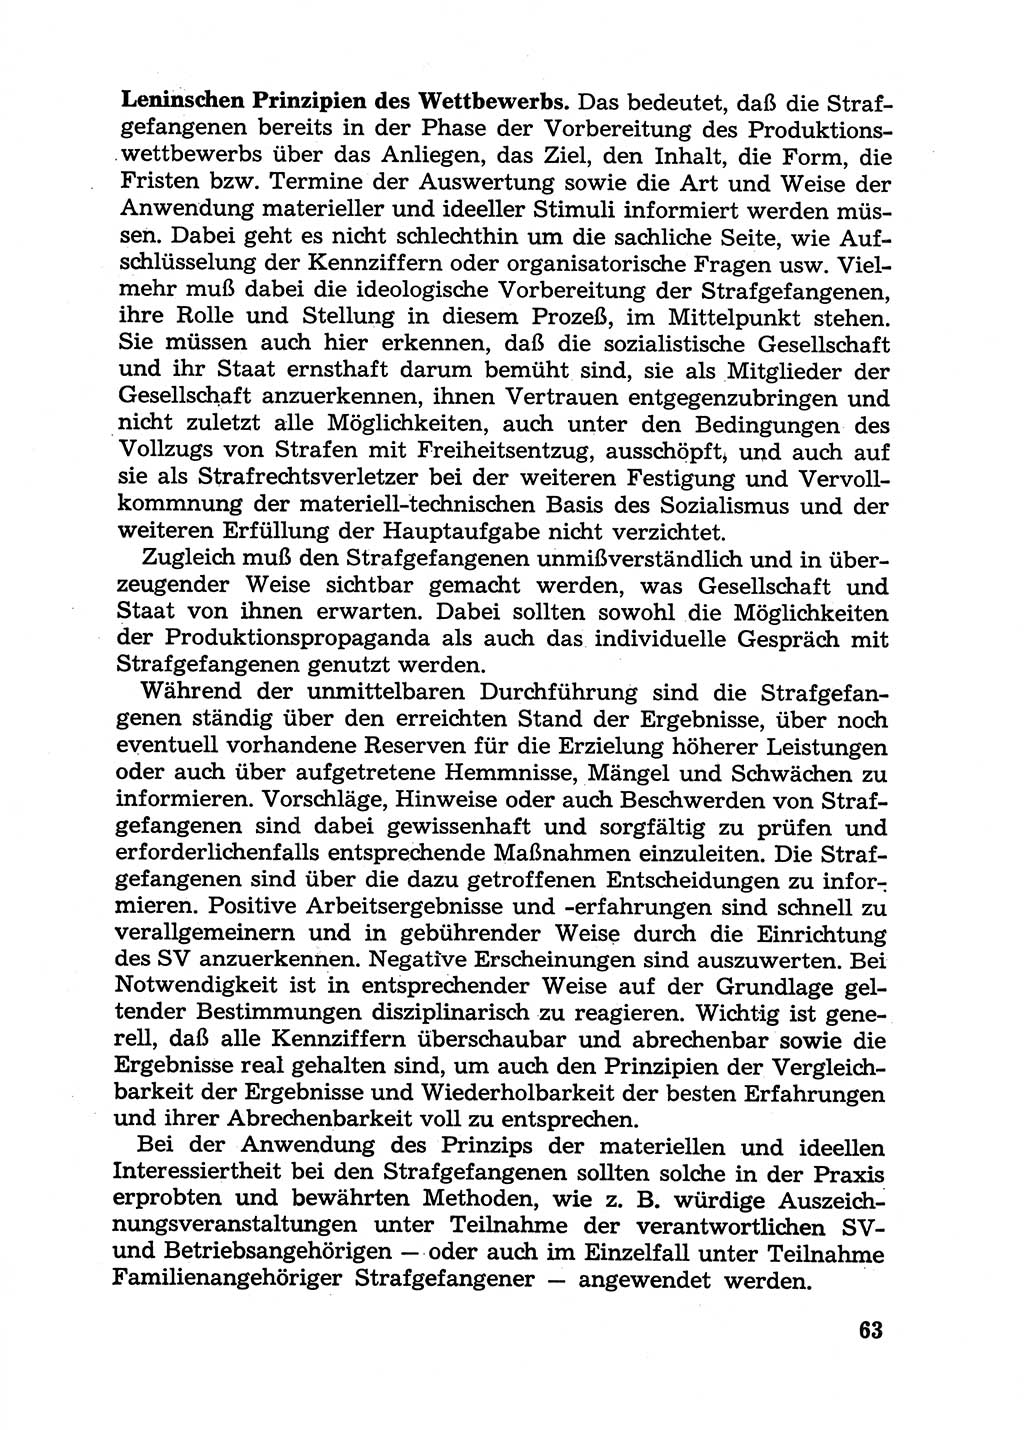 Handbuch für Betriebsangehörige, Abteilung Strafvollzug (SV) [Ministerium des Innern (MdI) Deutsche Demokratische Republik (DDR)] 1981, Seite 63 (Hb. BA Abt. SV MdI DDR 1981, S. 63)